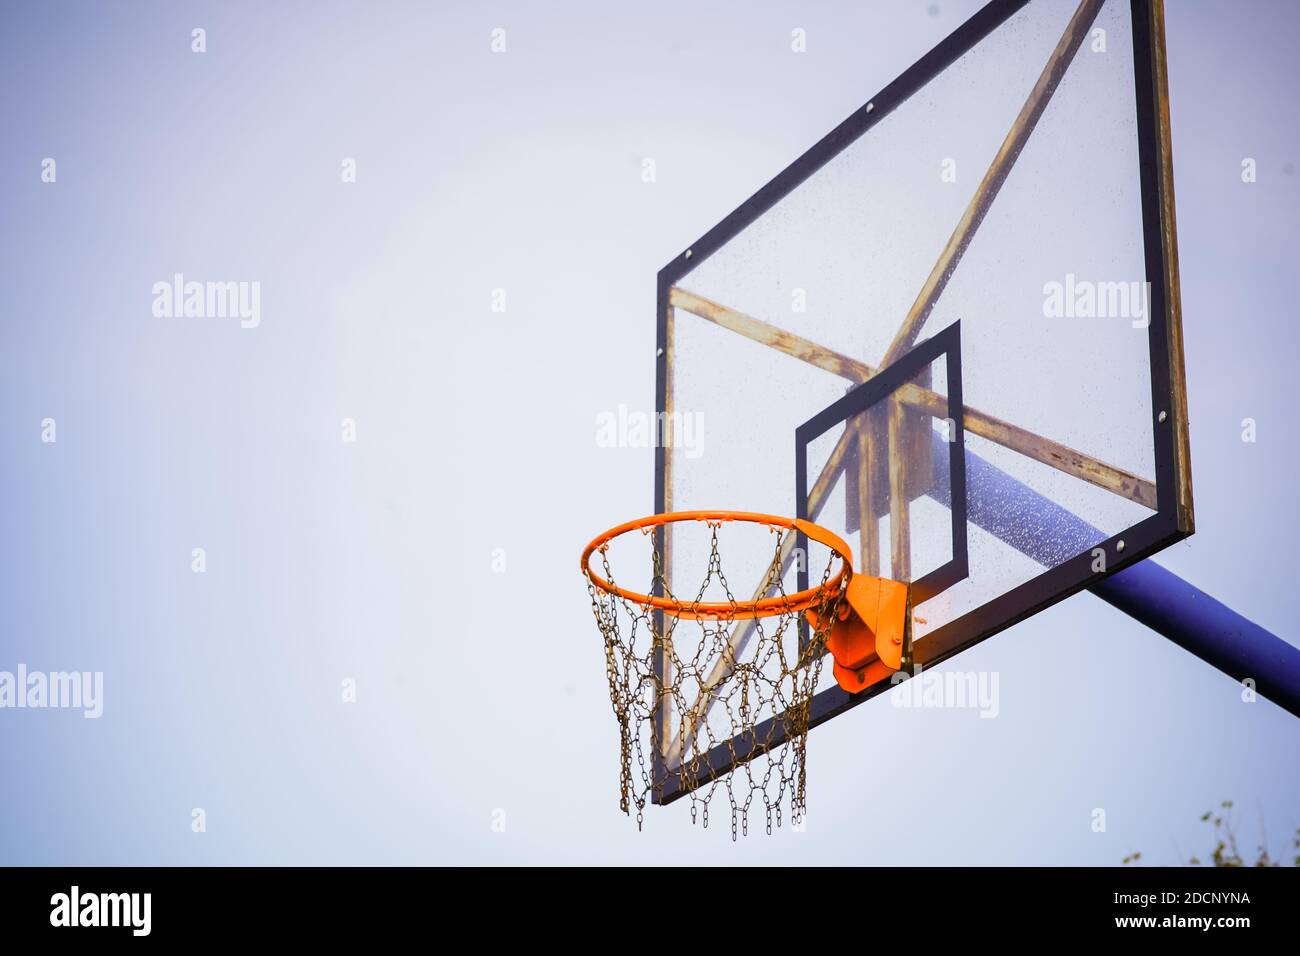 Panier de basket-ball avec plateau transparent et chaînes au lieu de filet contre le ciel bleu clair pendant l'après-midi avec un léger vignetage sombre Banque D'Images